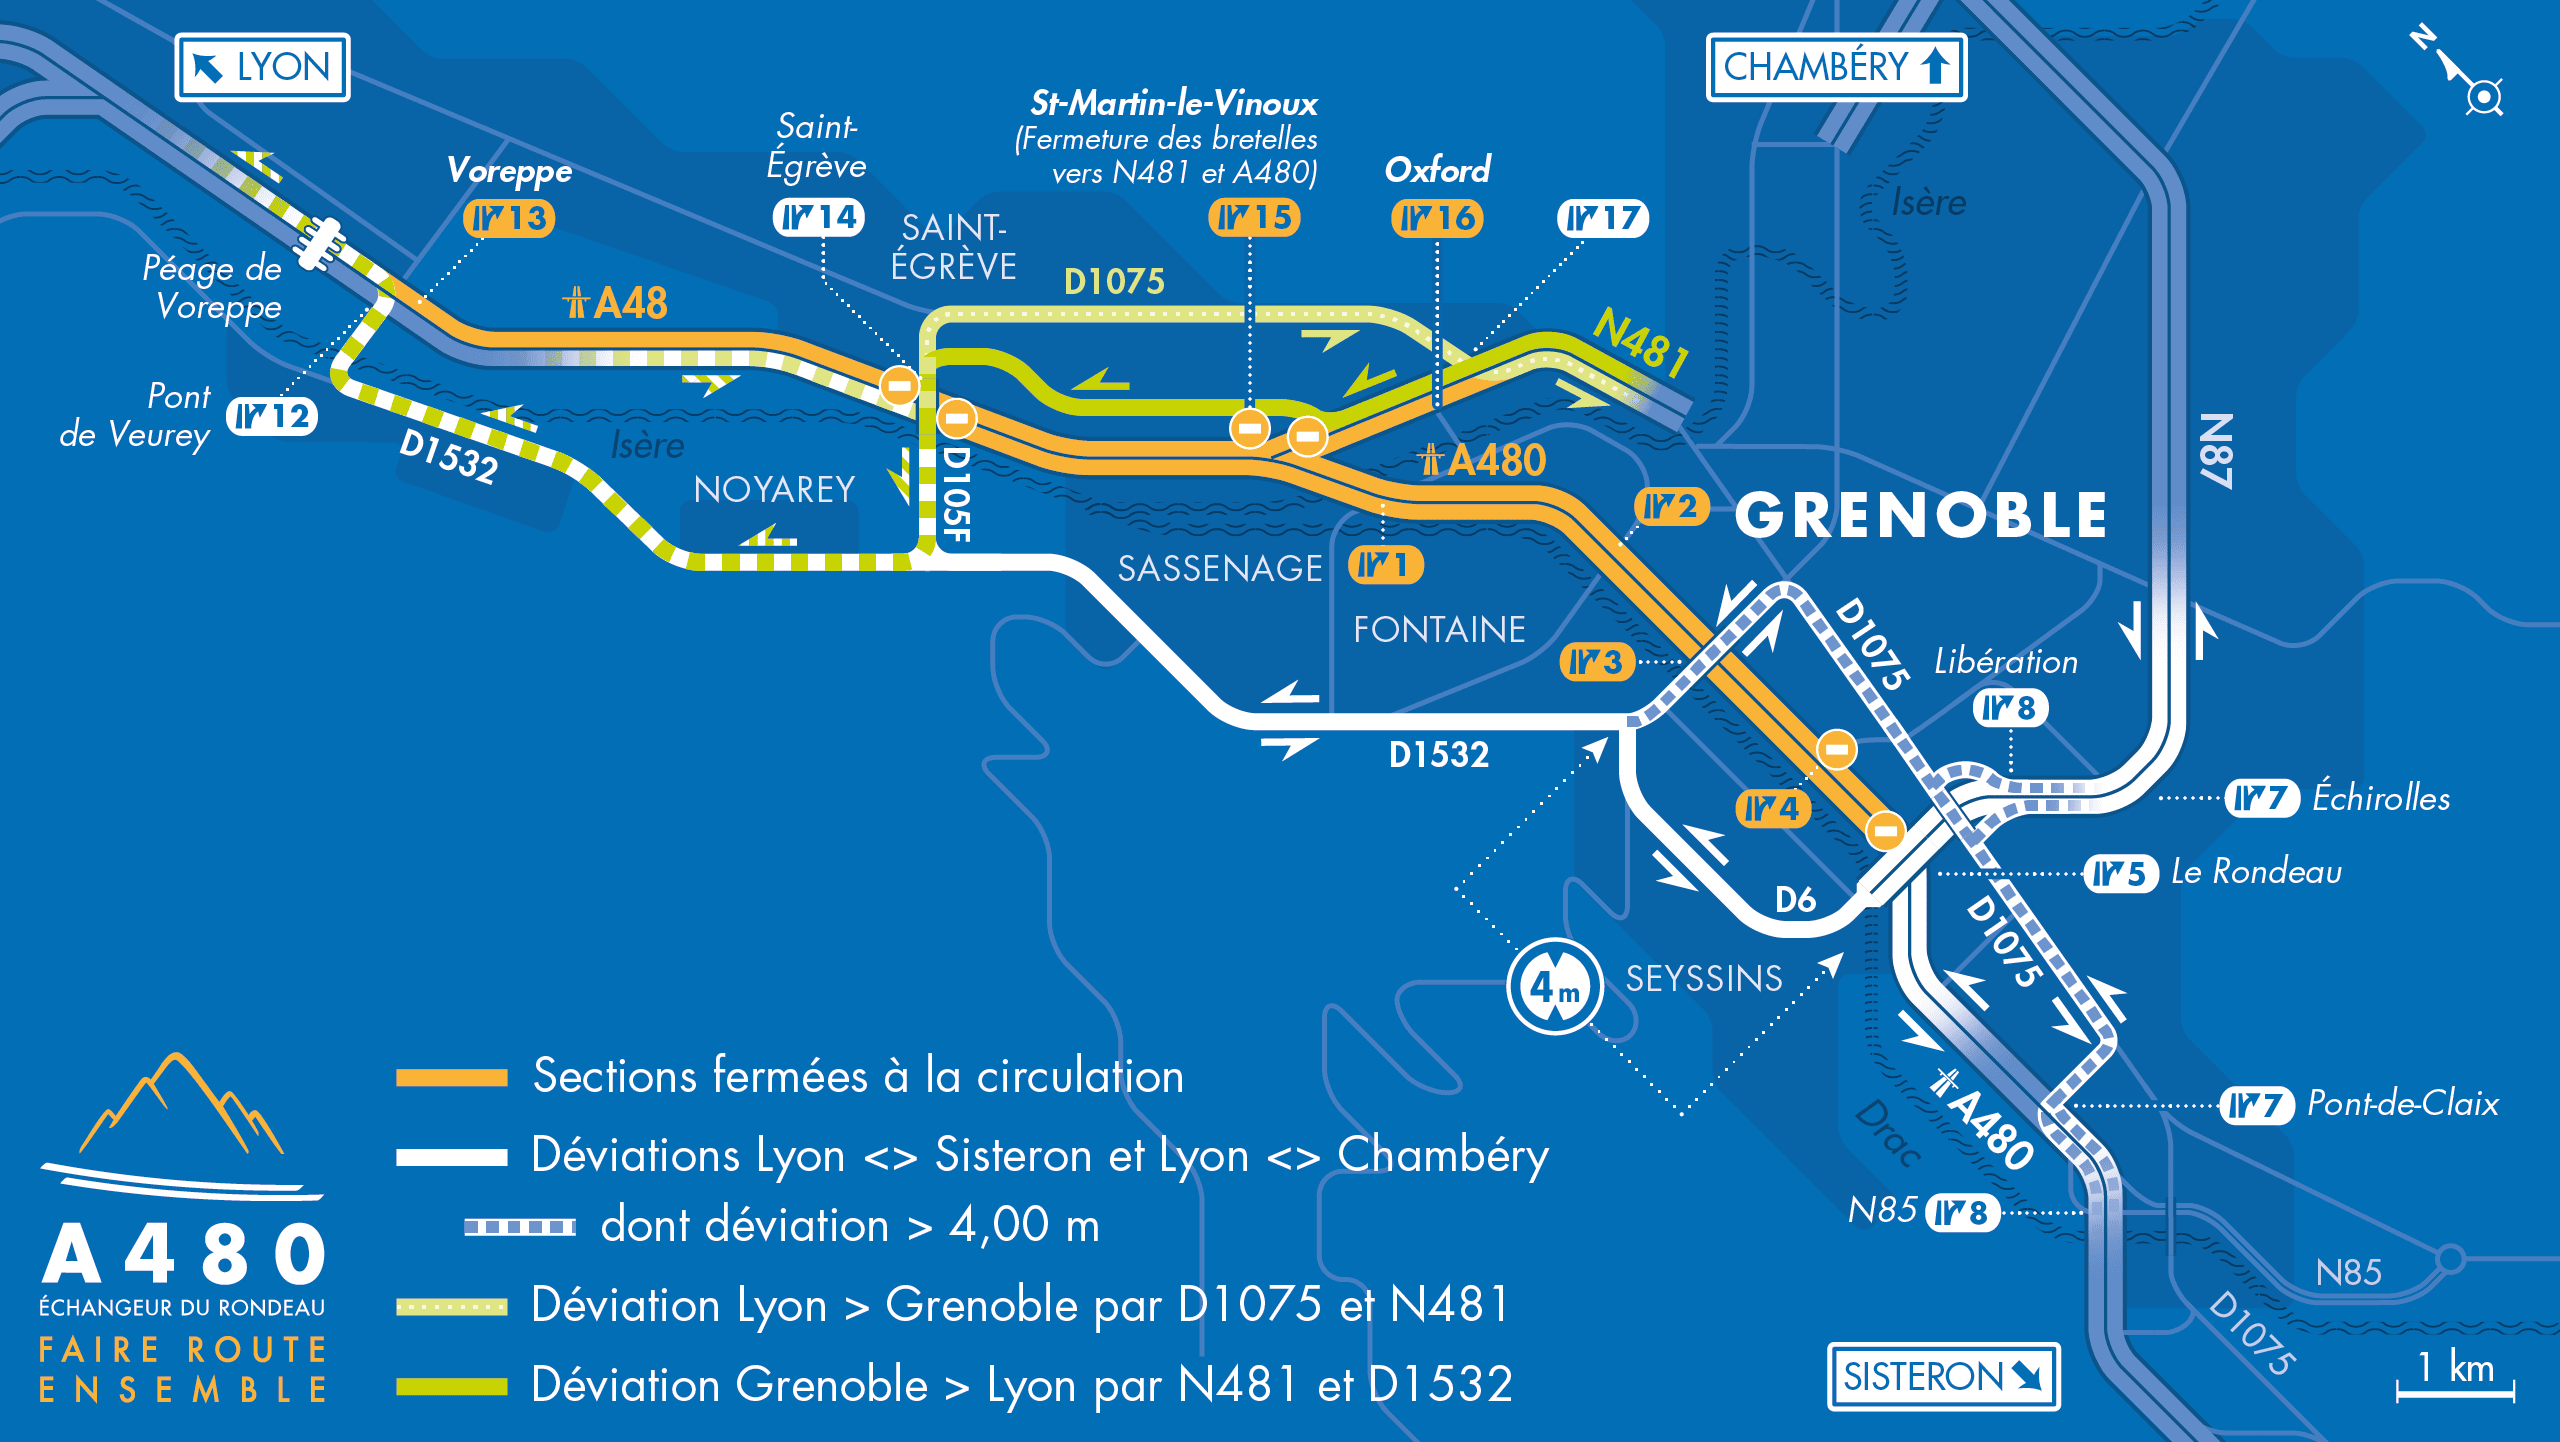 Carte de déviation suite à l'aménagement de l'autoroute urbaine A480 sur le bassin grenoblois